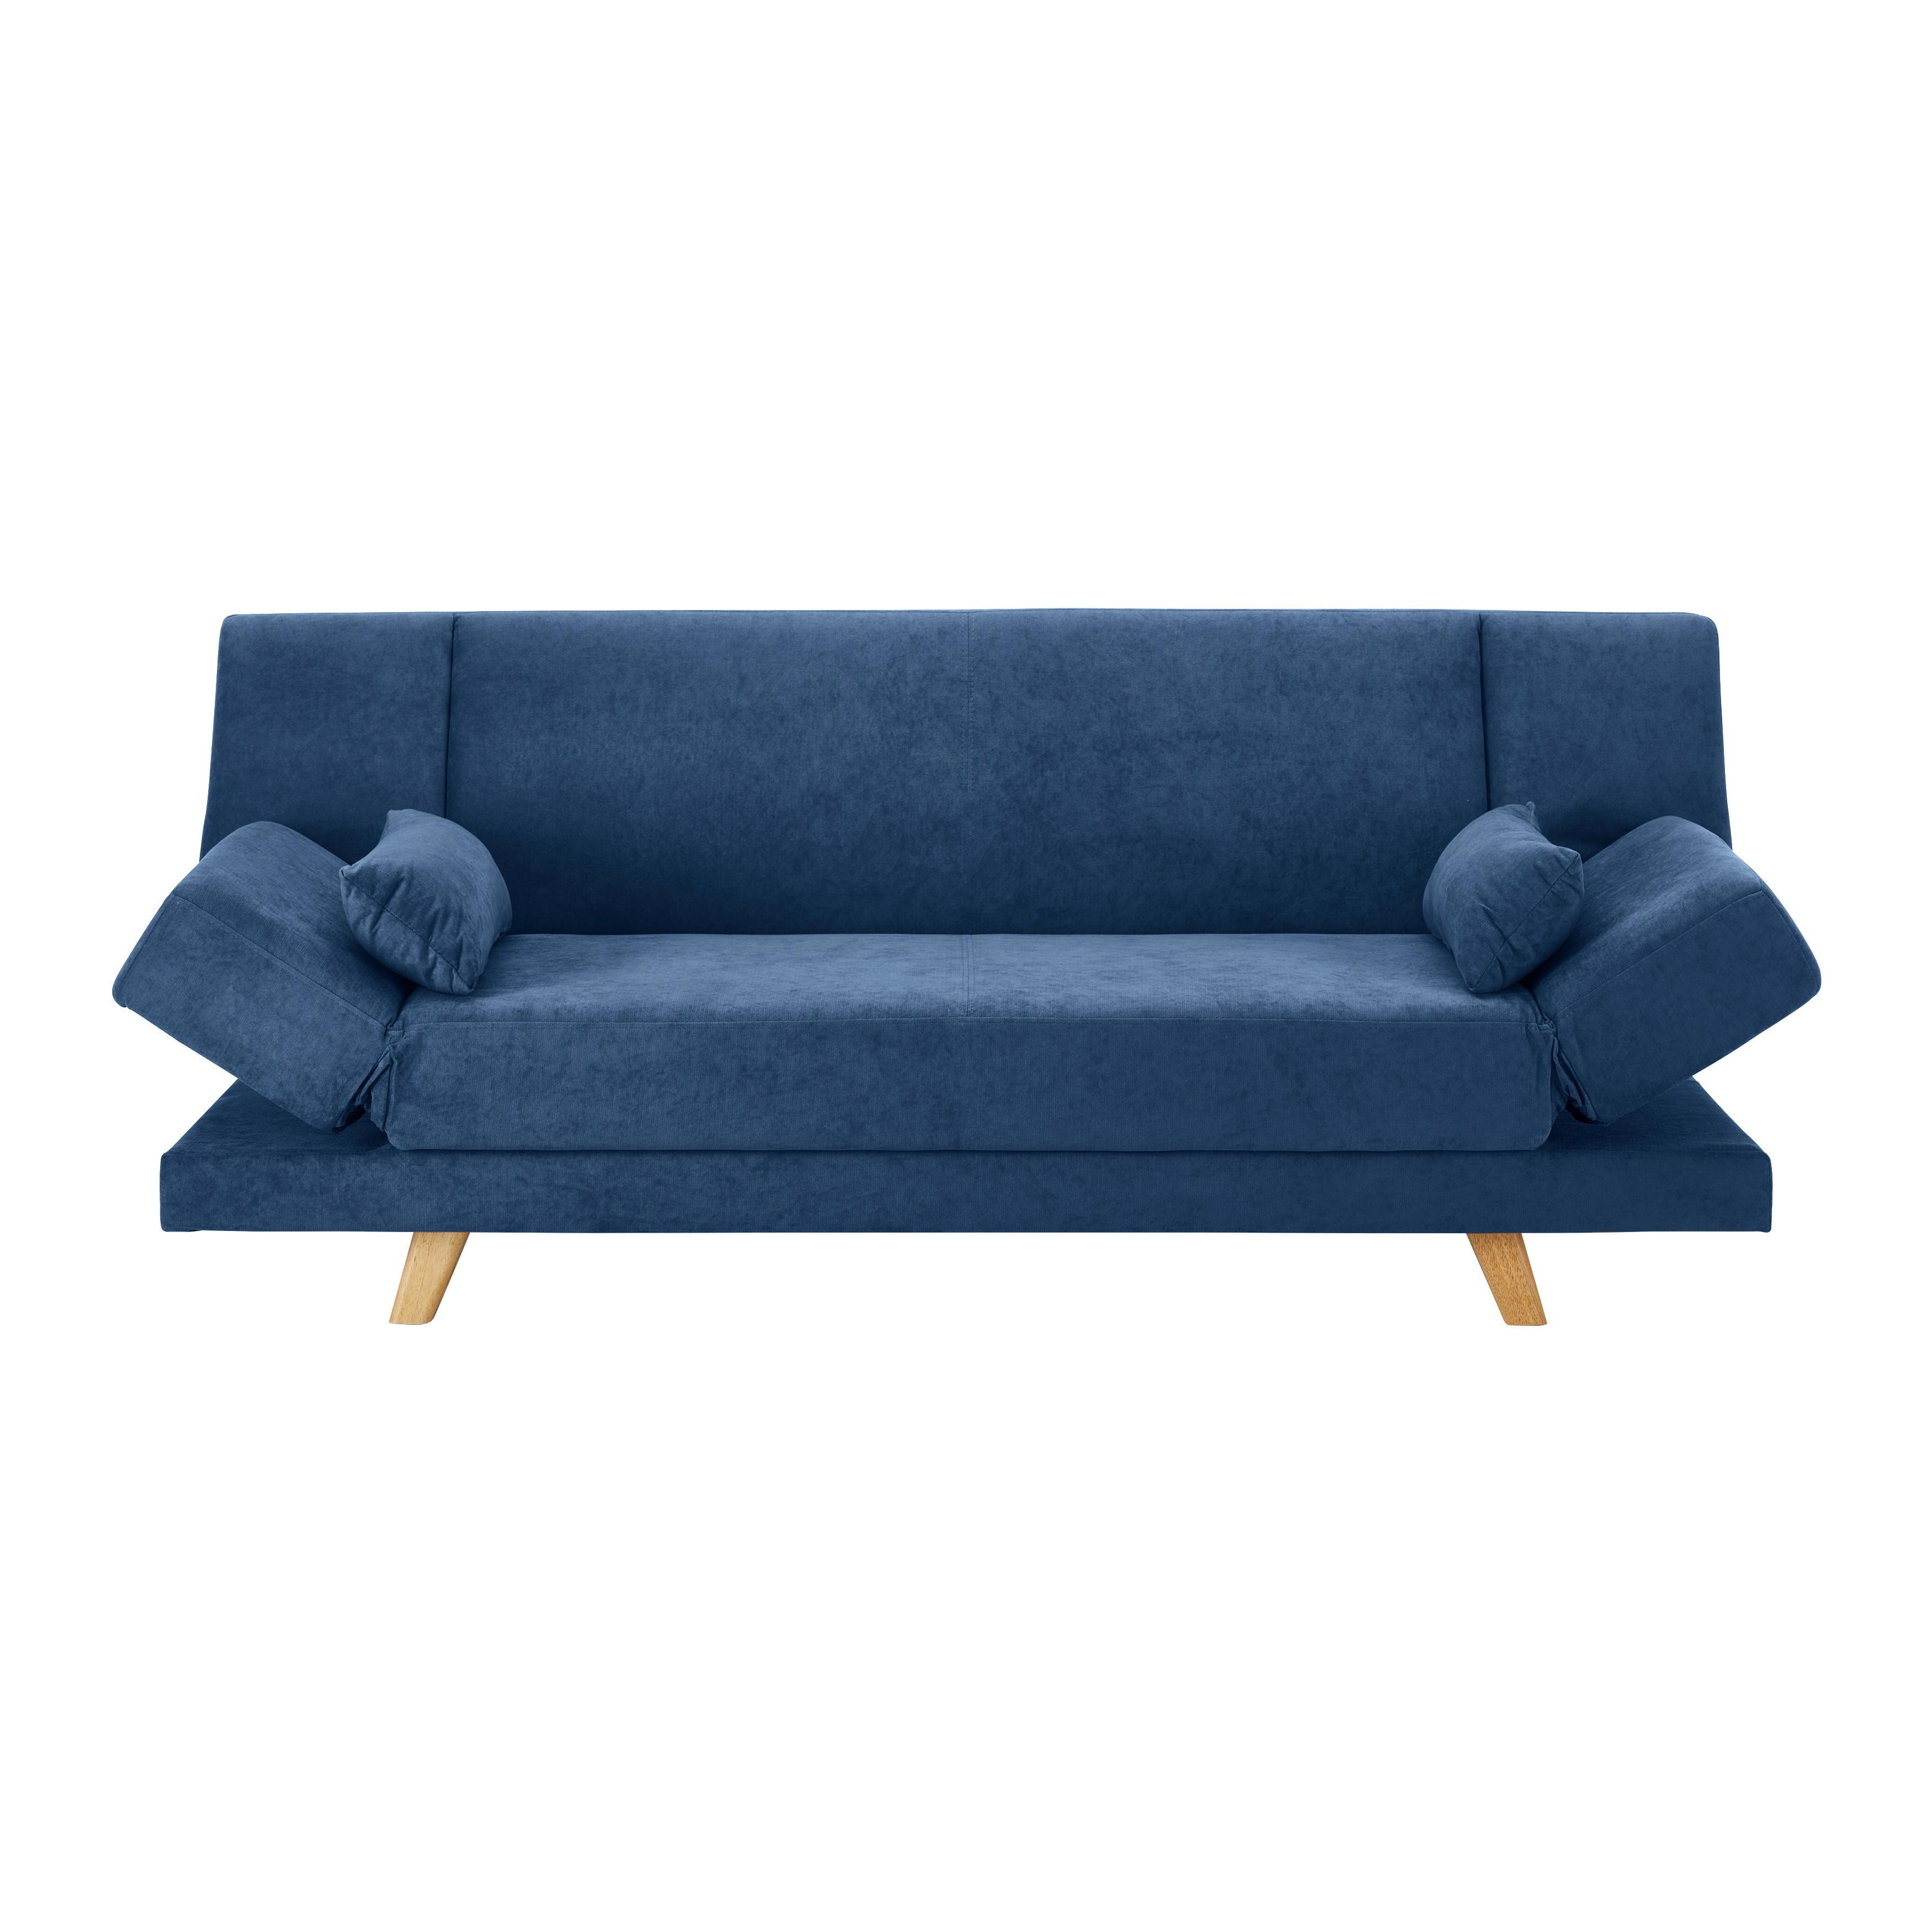 Zofa S Posteljno Funkcijo Funky, Modra - modra/naravne barve, Moderno, tekstil/les (183/73/79cm) - Bessagi Home